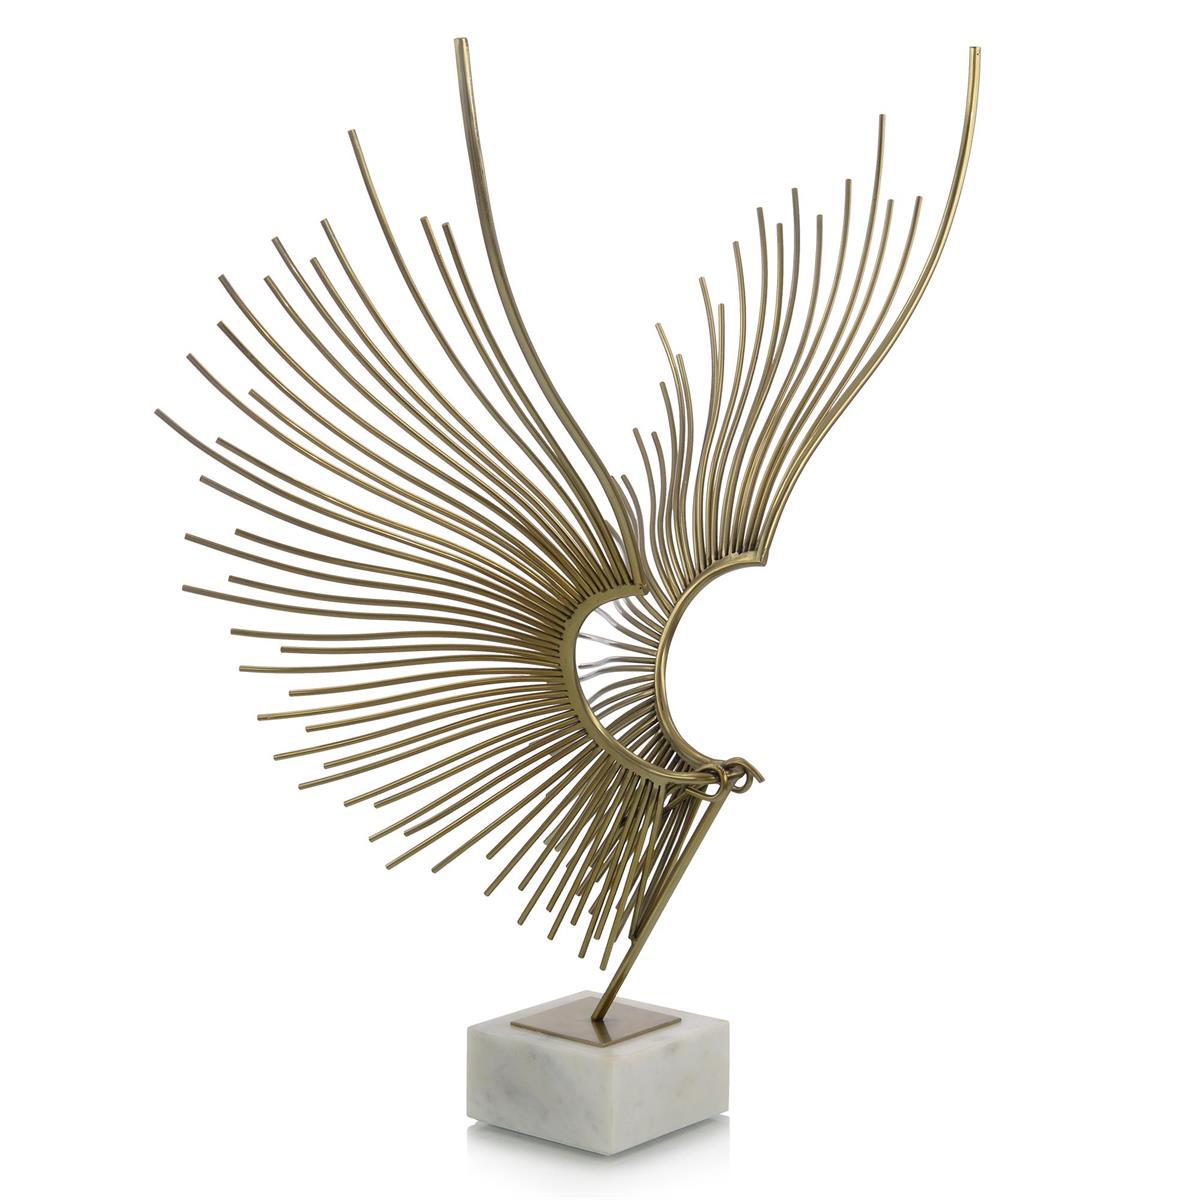 Abstract Bird Sculpture-John Richard-Sculptures & Objects-Artistic Elements